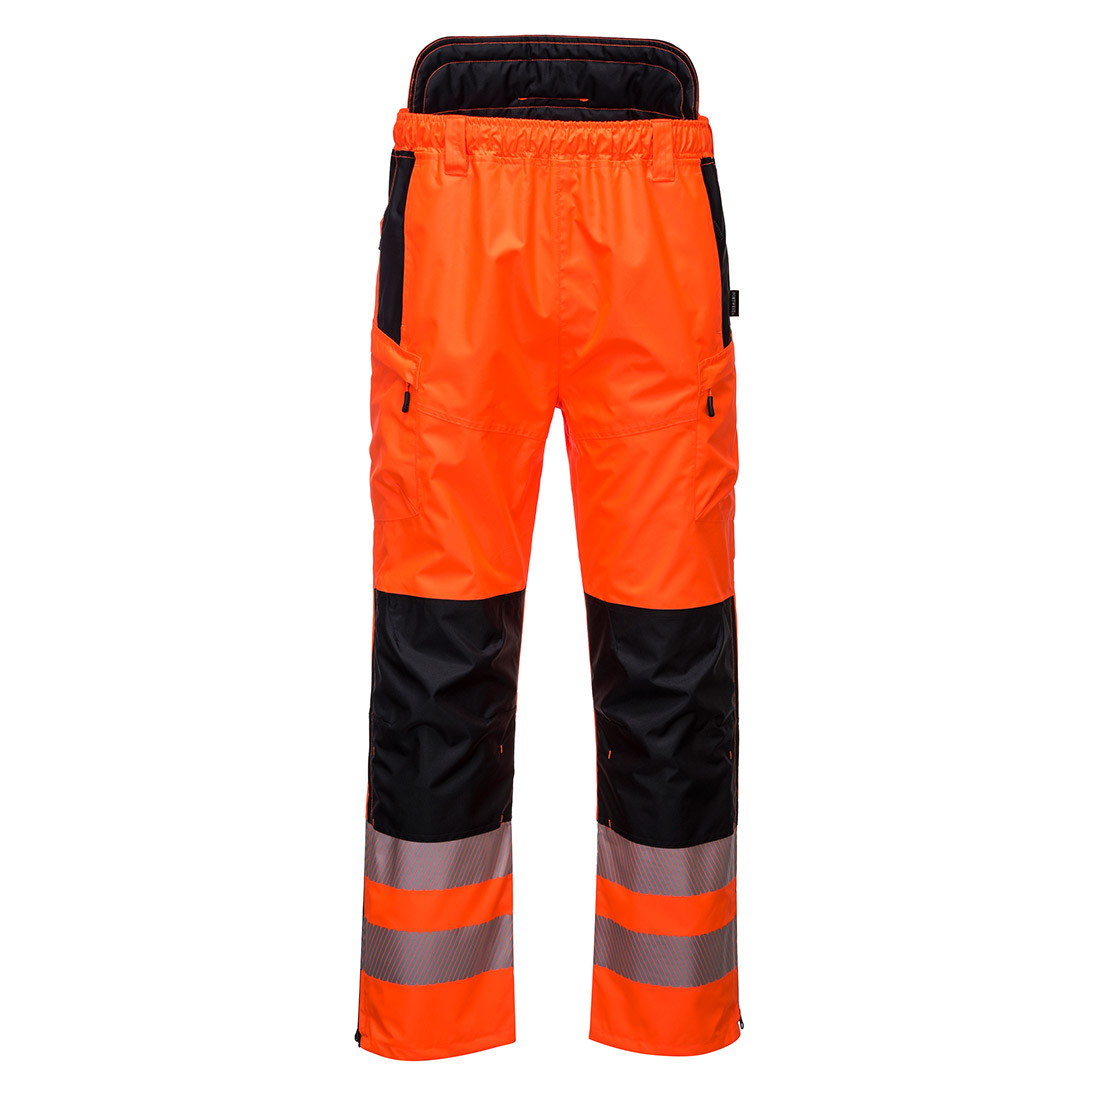 Pantaloni HI VIS PW3 Extreme - Imbracaminte de protectie